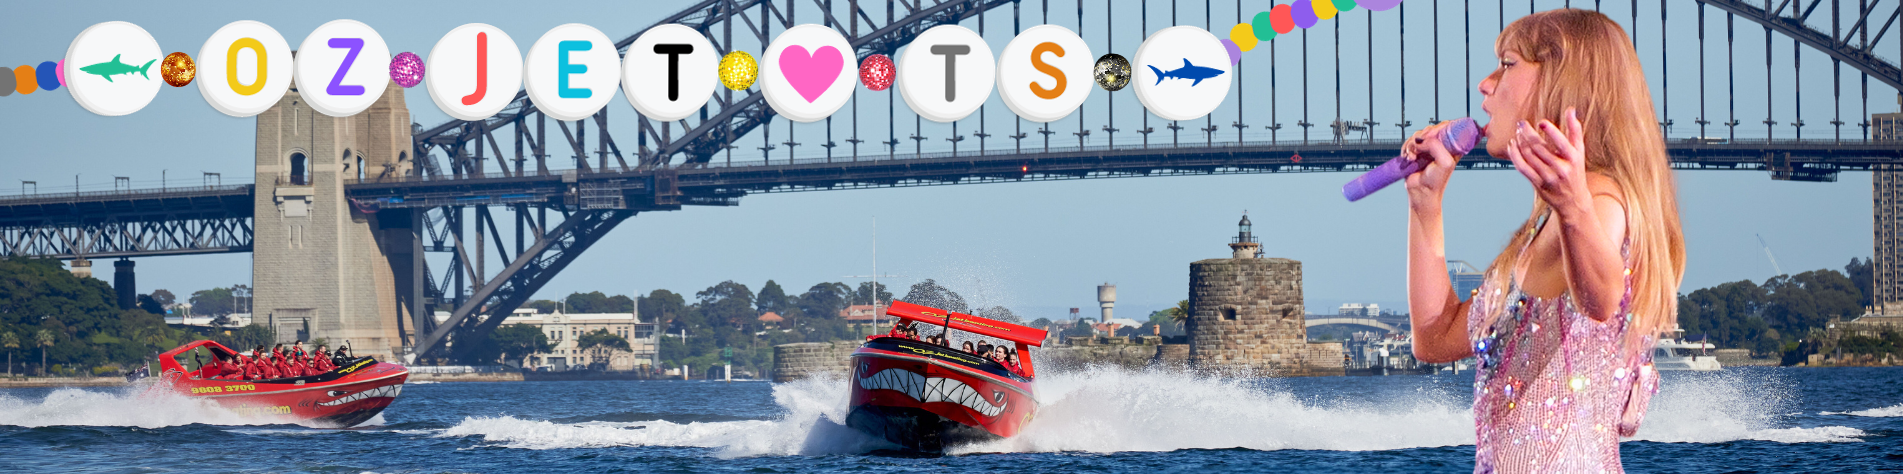 Ozjet boating Sydney Ride 